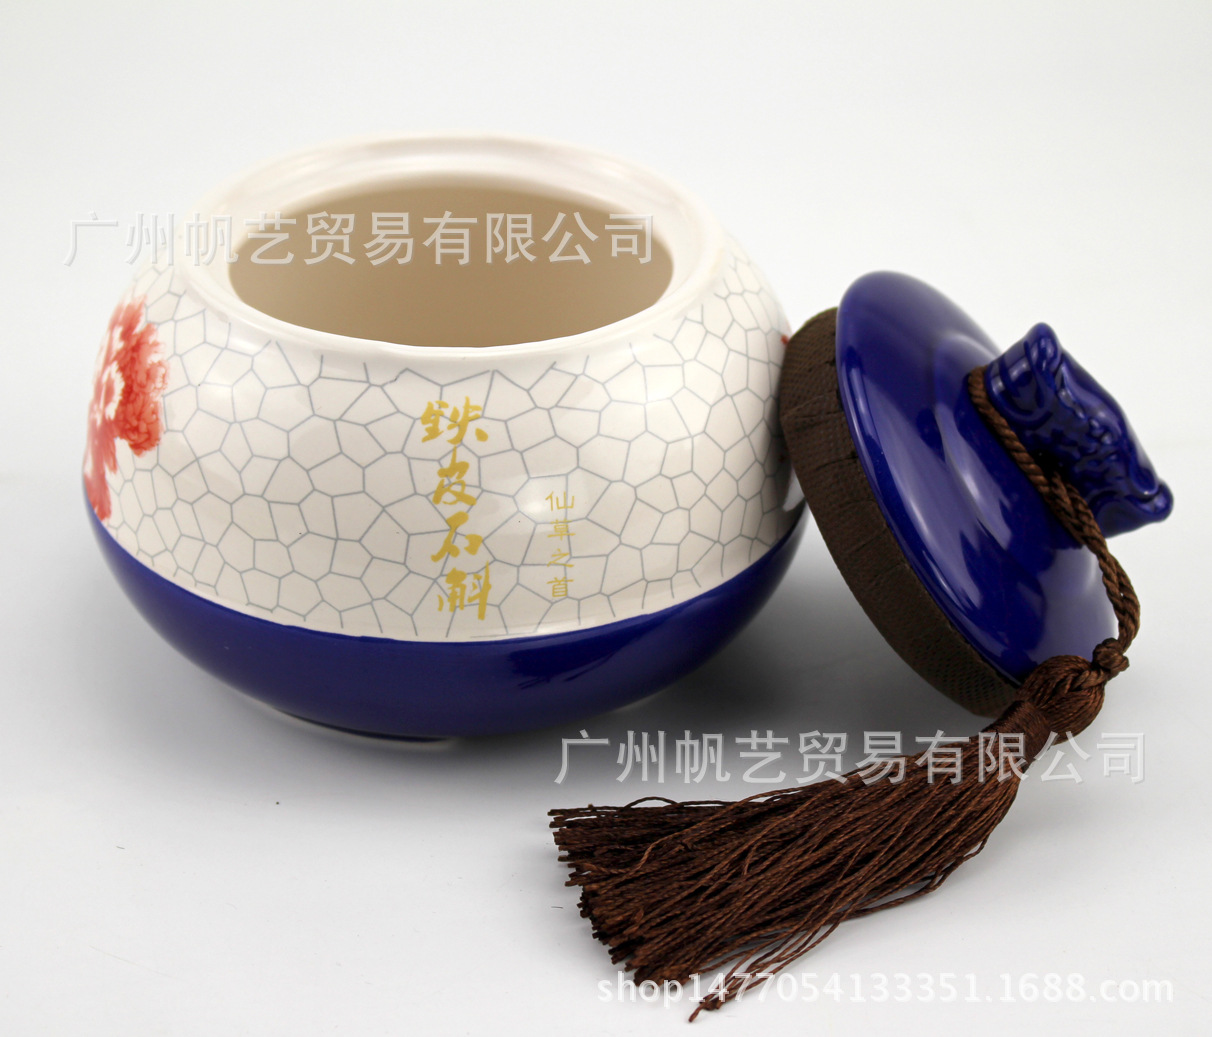 咖啡双陶瓷石斛15